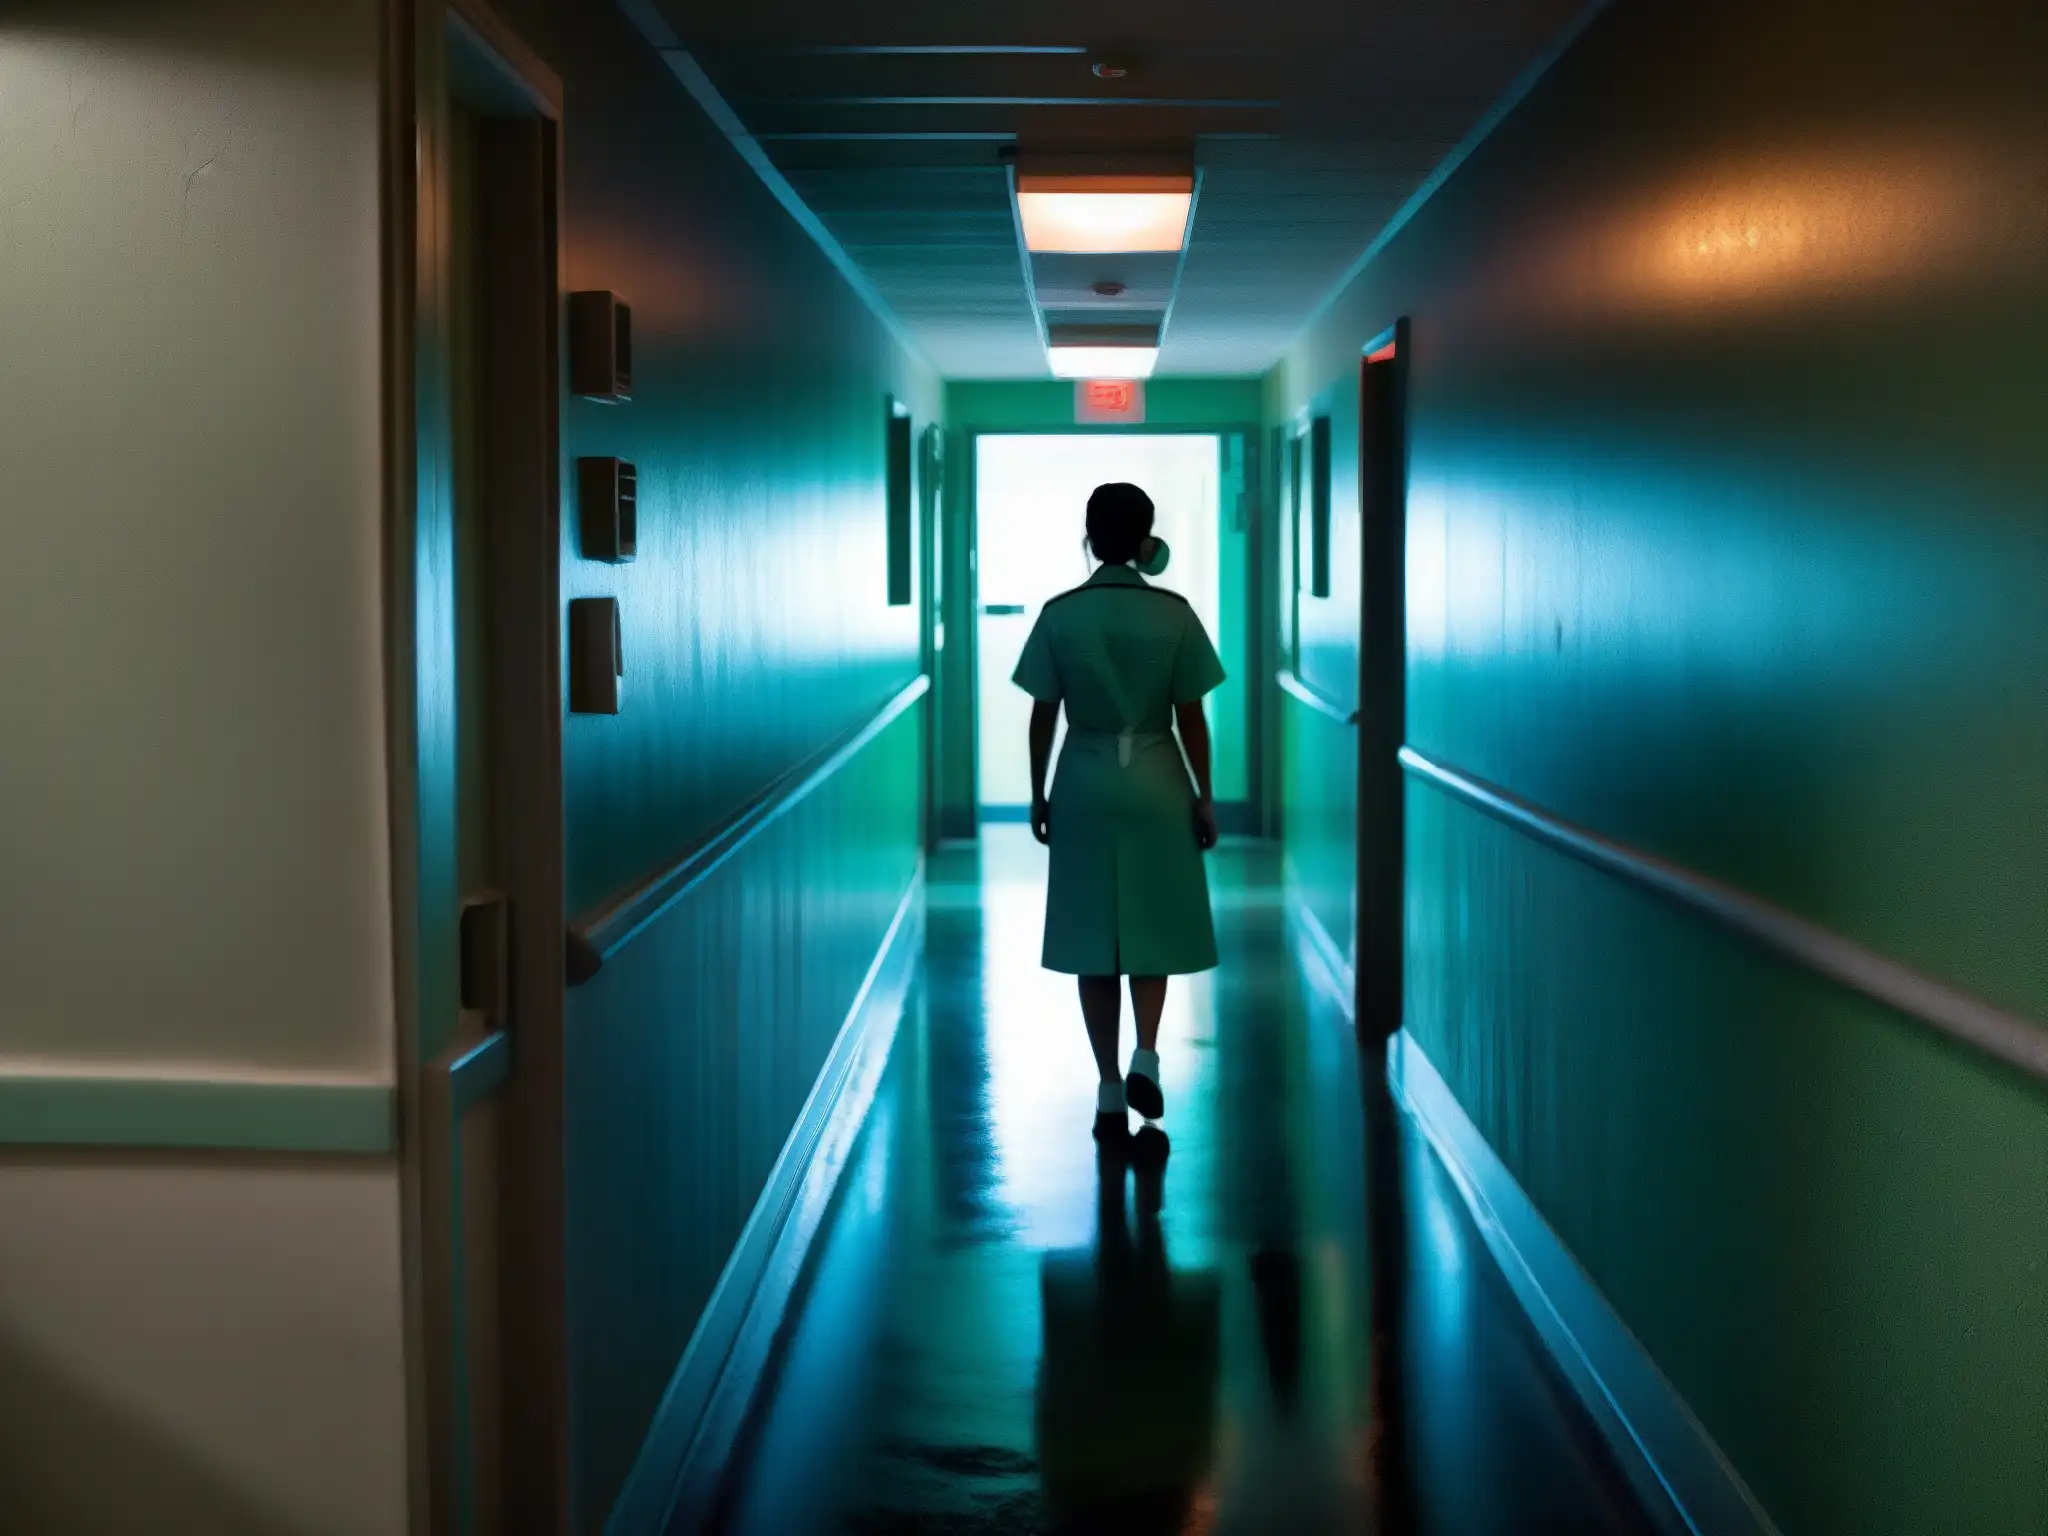 Un inquietante pasillo de hospital con luces parpadeantes y un enfermera de espaldas, evocando la leyenda mexicana de La Planchada